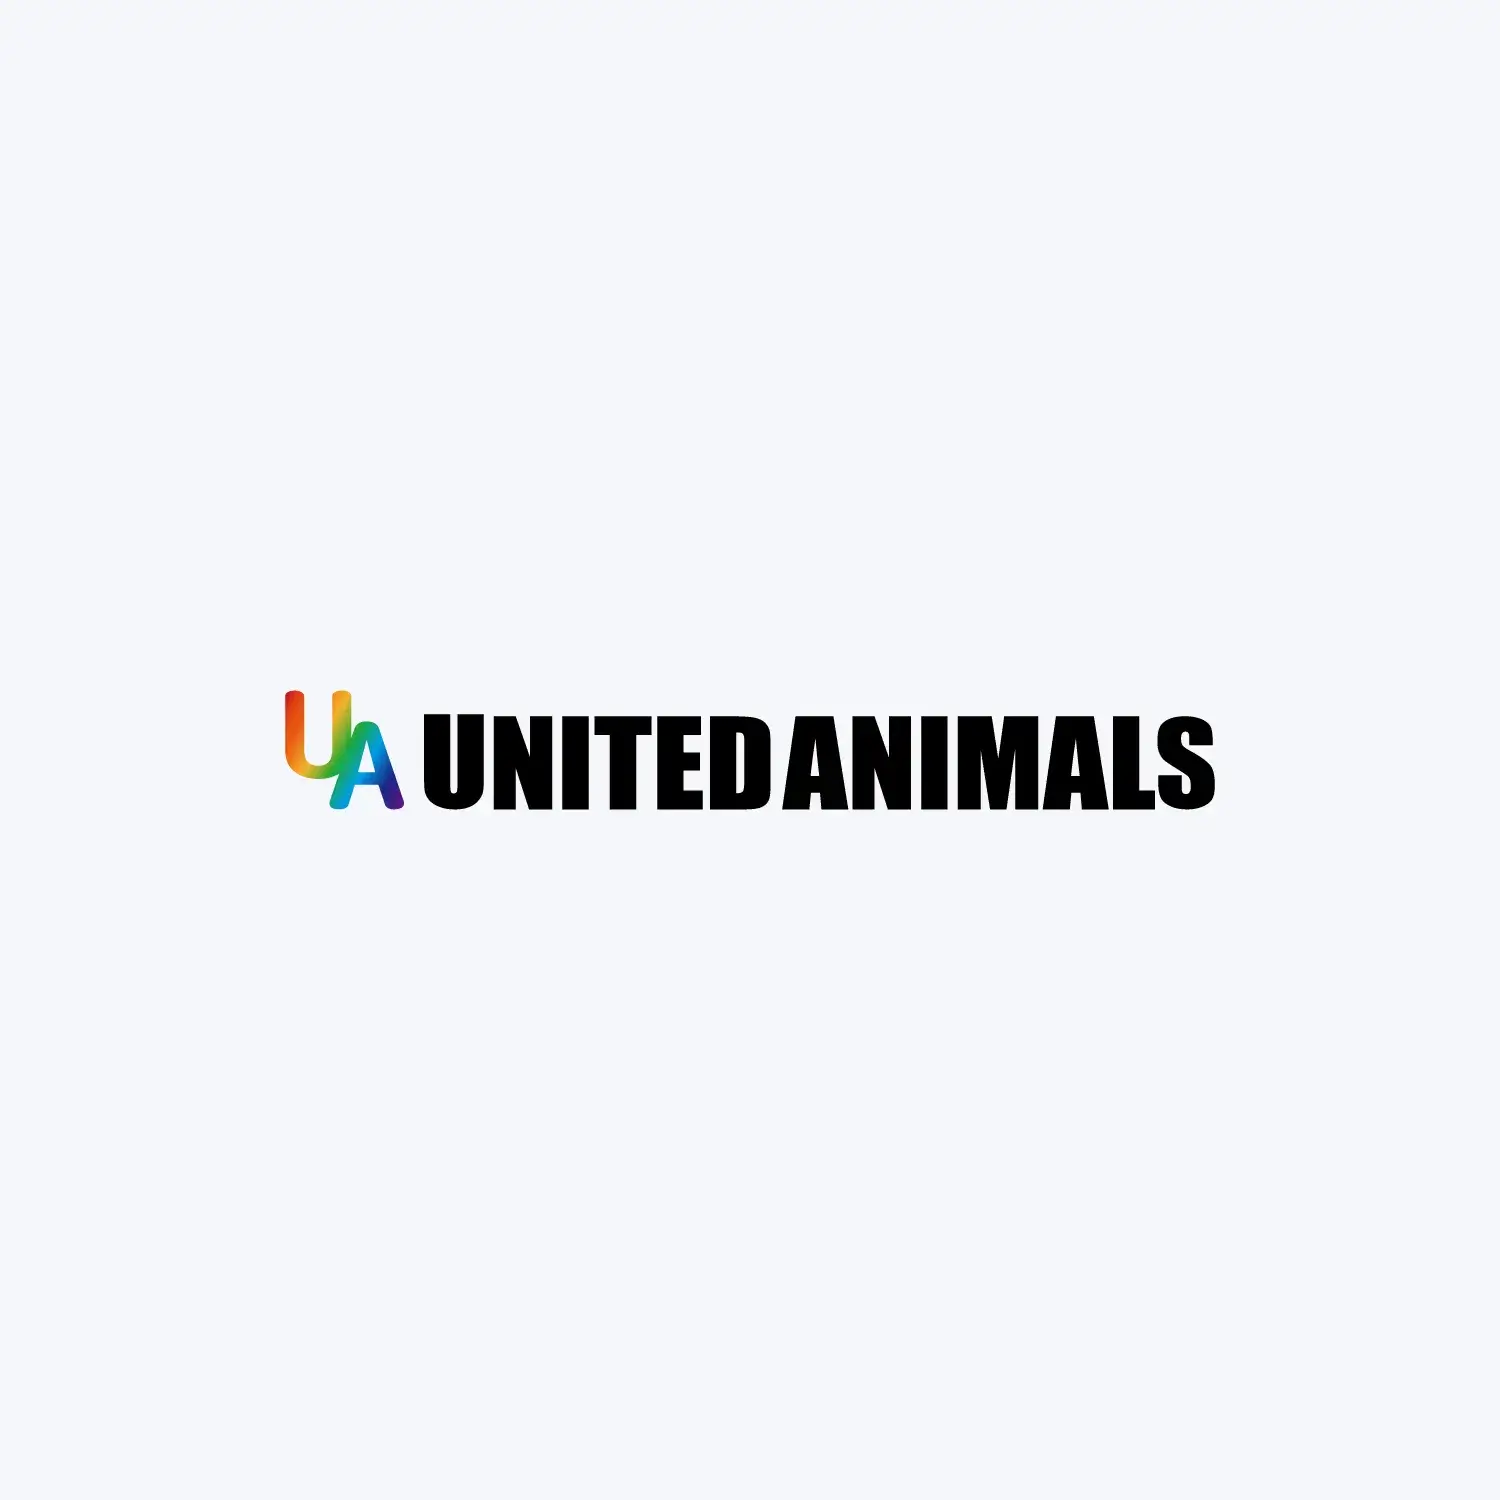 UNITED ANIMALS